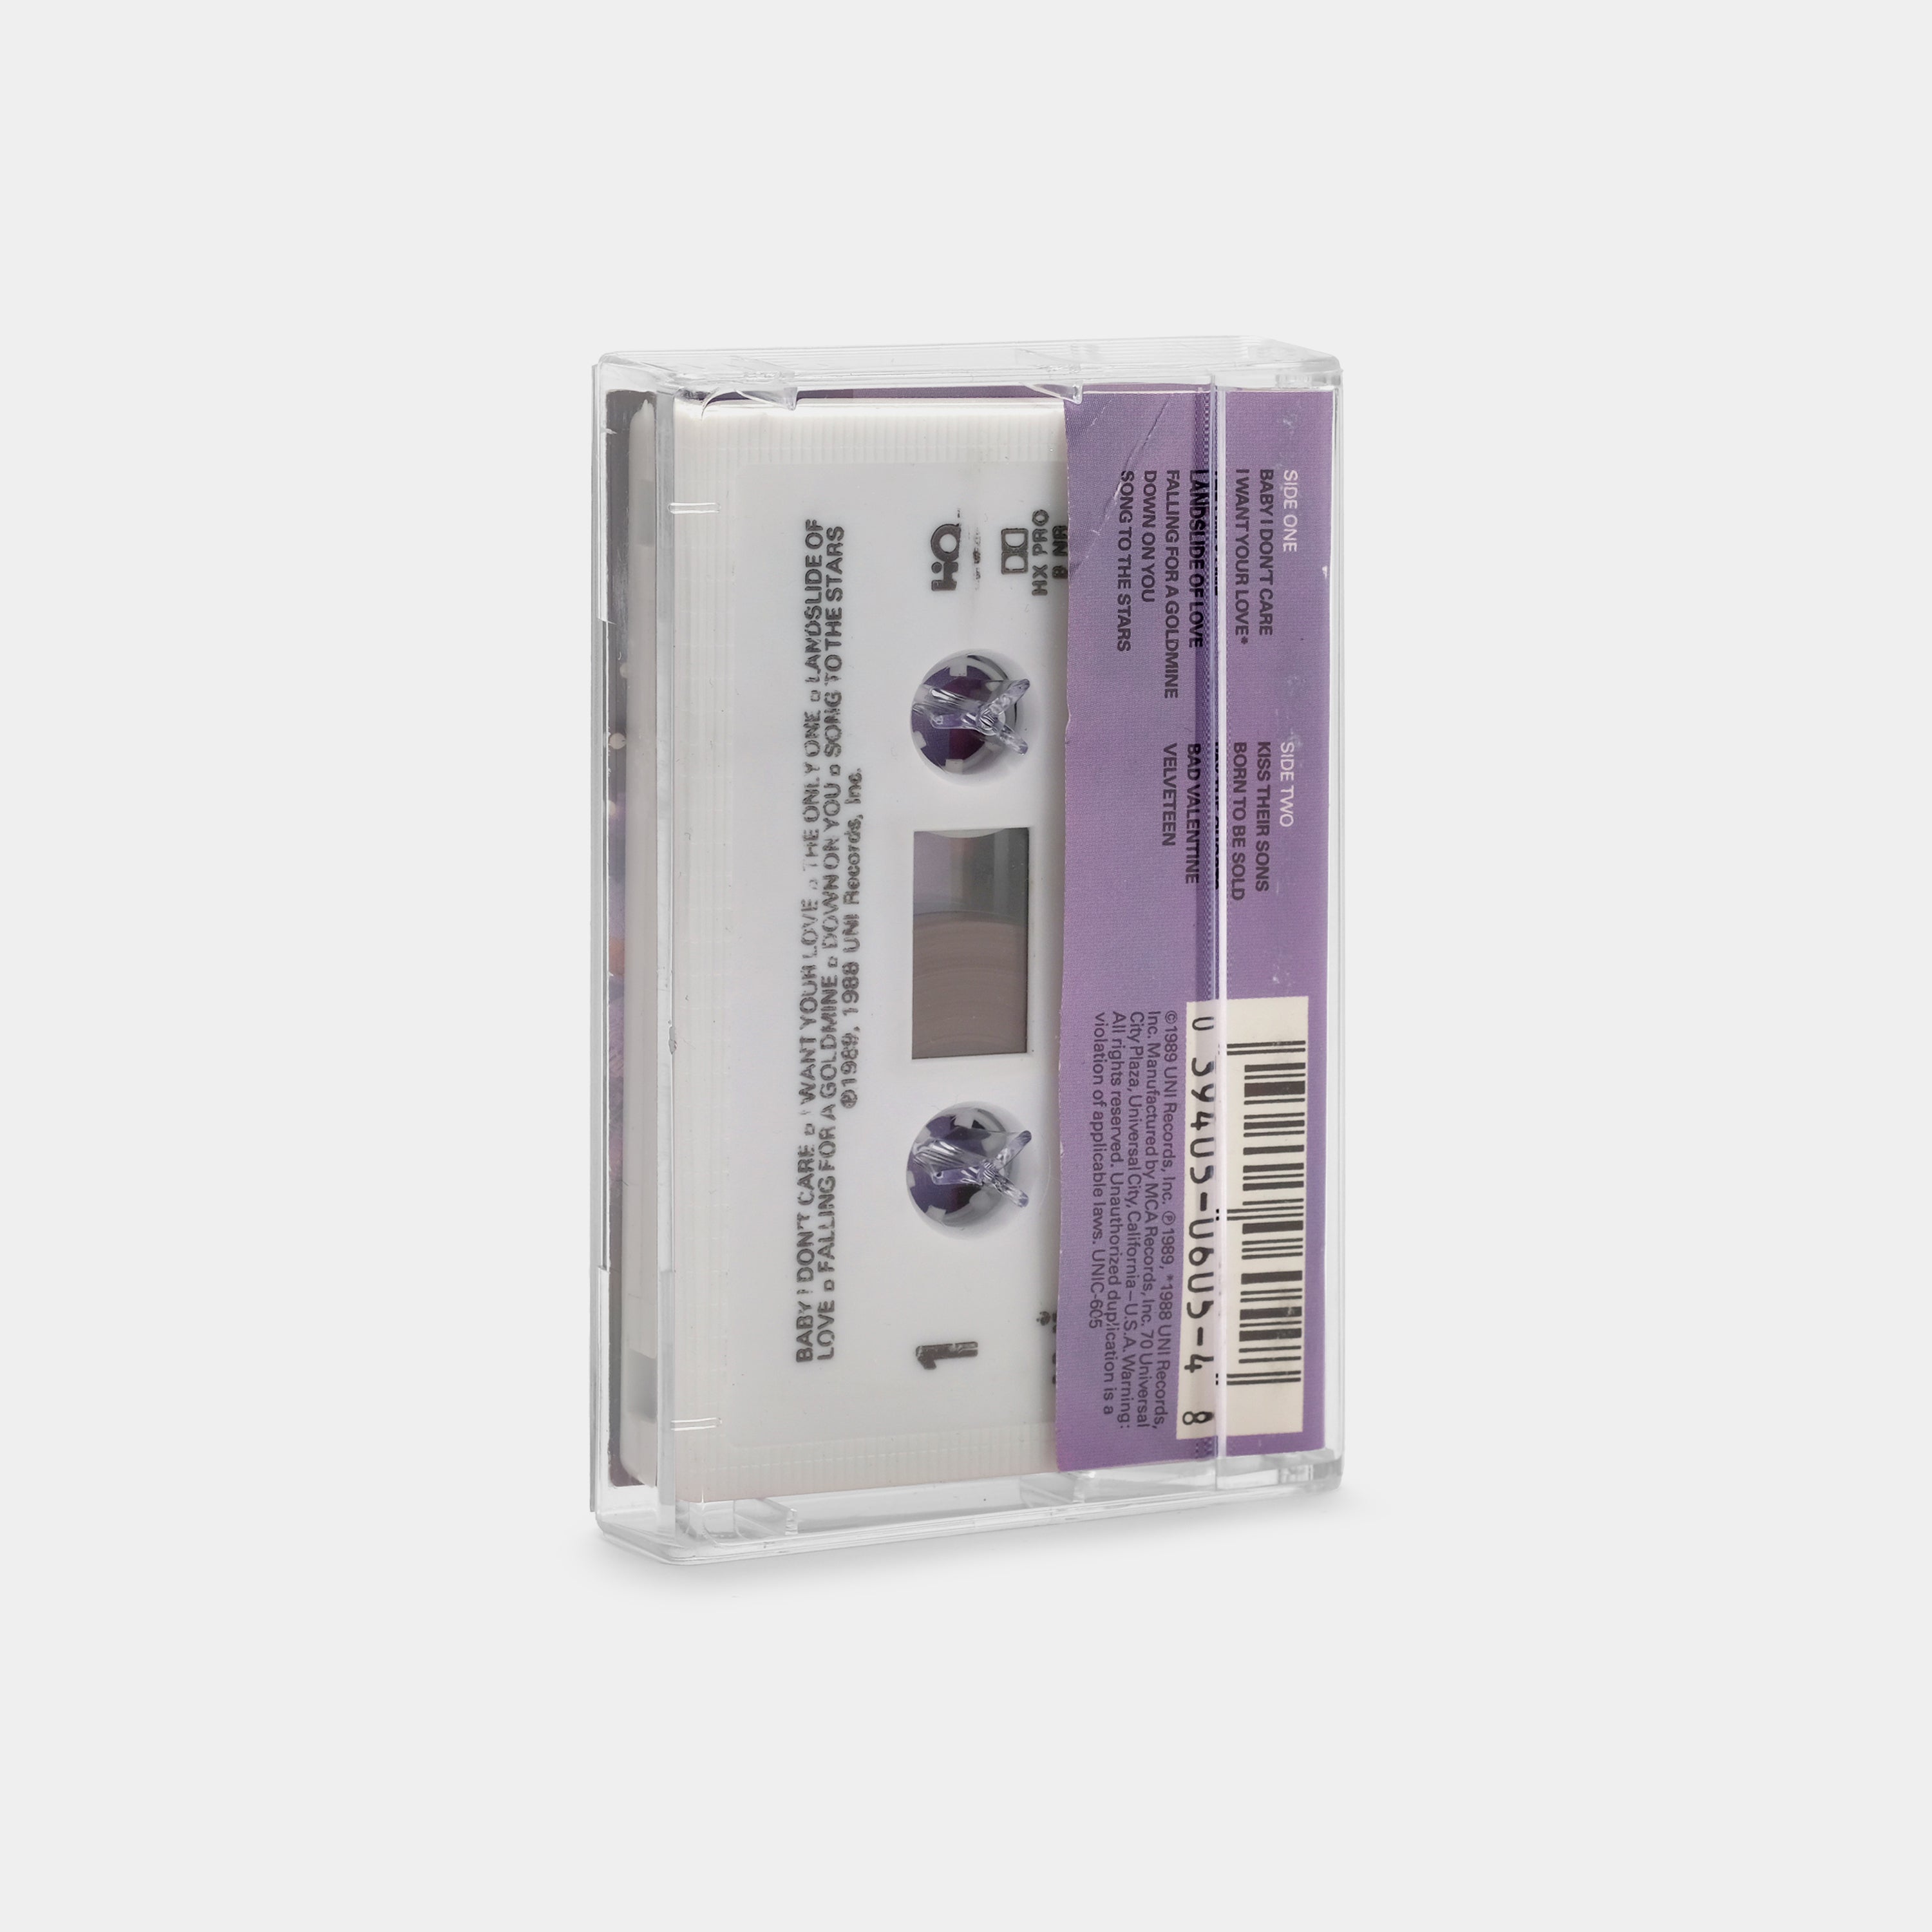 Velveteen - Transvision Vamp Cassette Tape